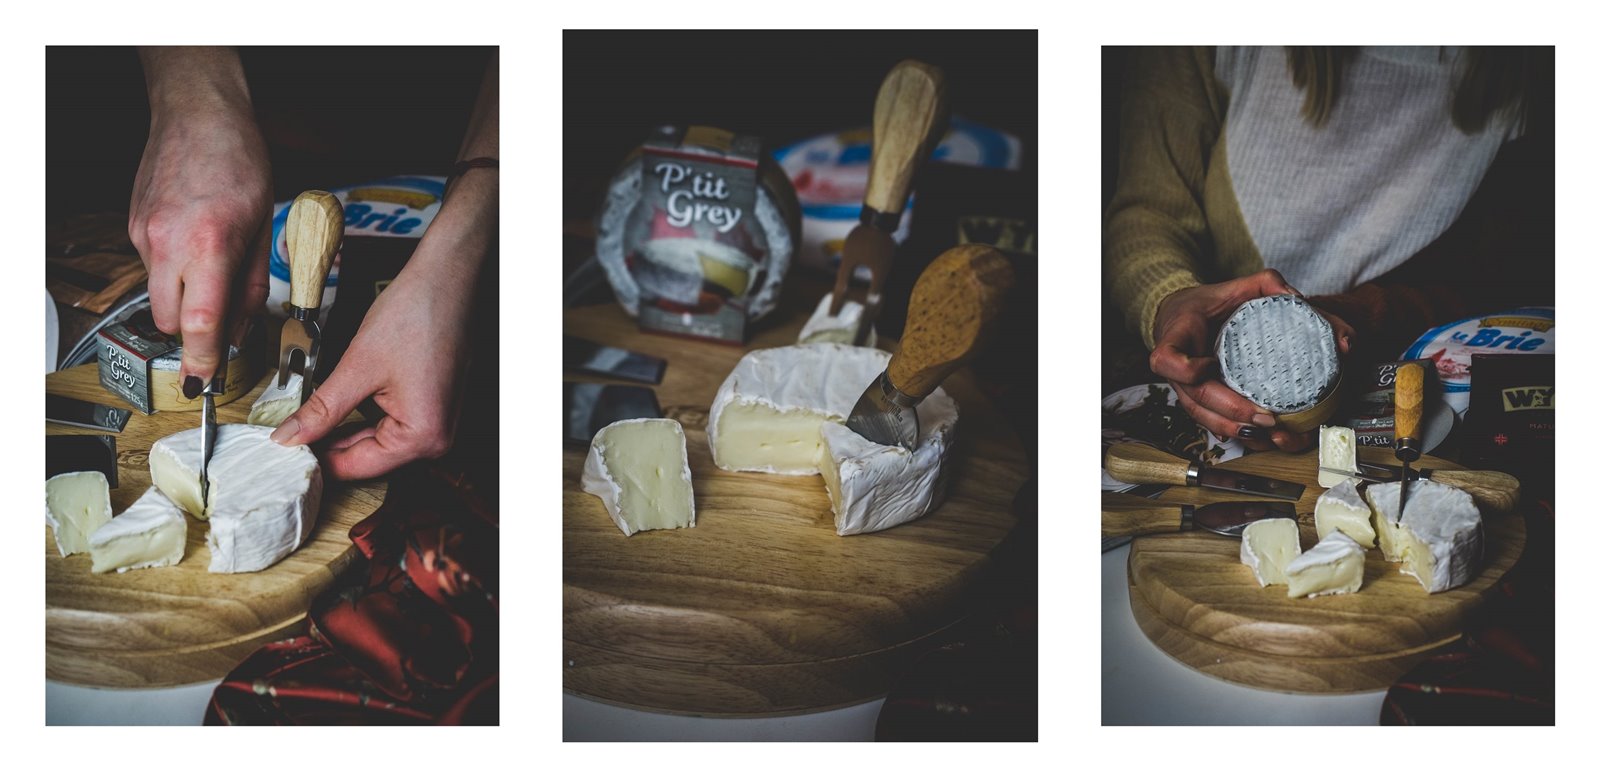 1 temar międzynarodowy dzień sera gdzie kupić dobry oryginalny ser francuski sery z pleśnią ciekawostki na temat serów cheedar, grecka feta prawdziwa kcal cena jakość opinie blog łódź